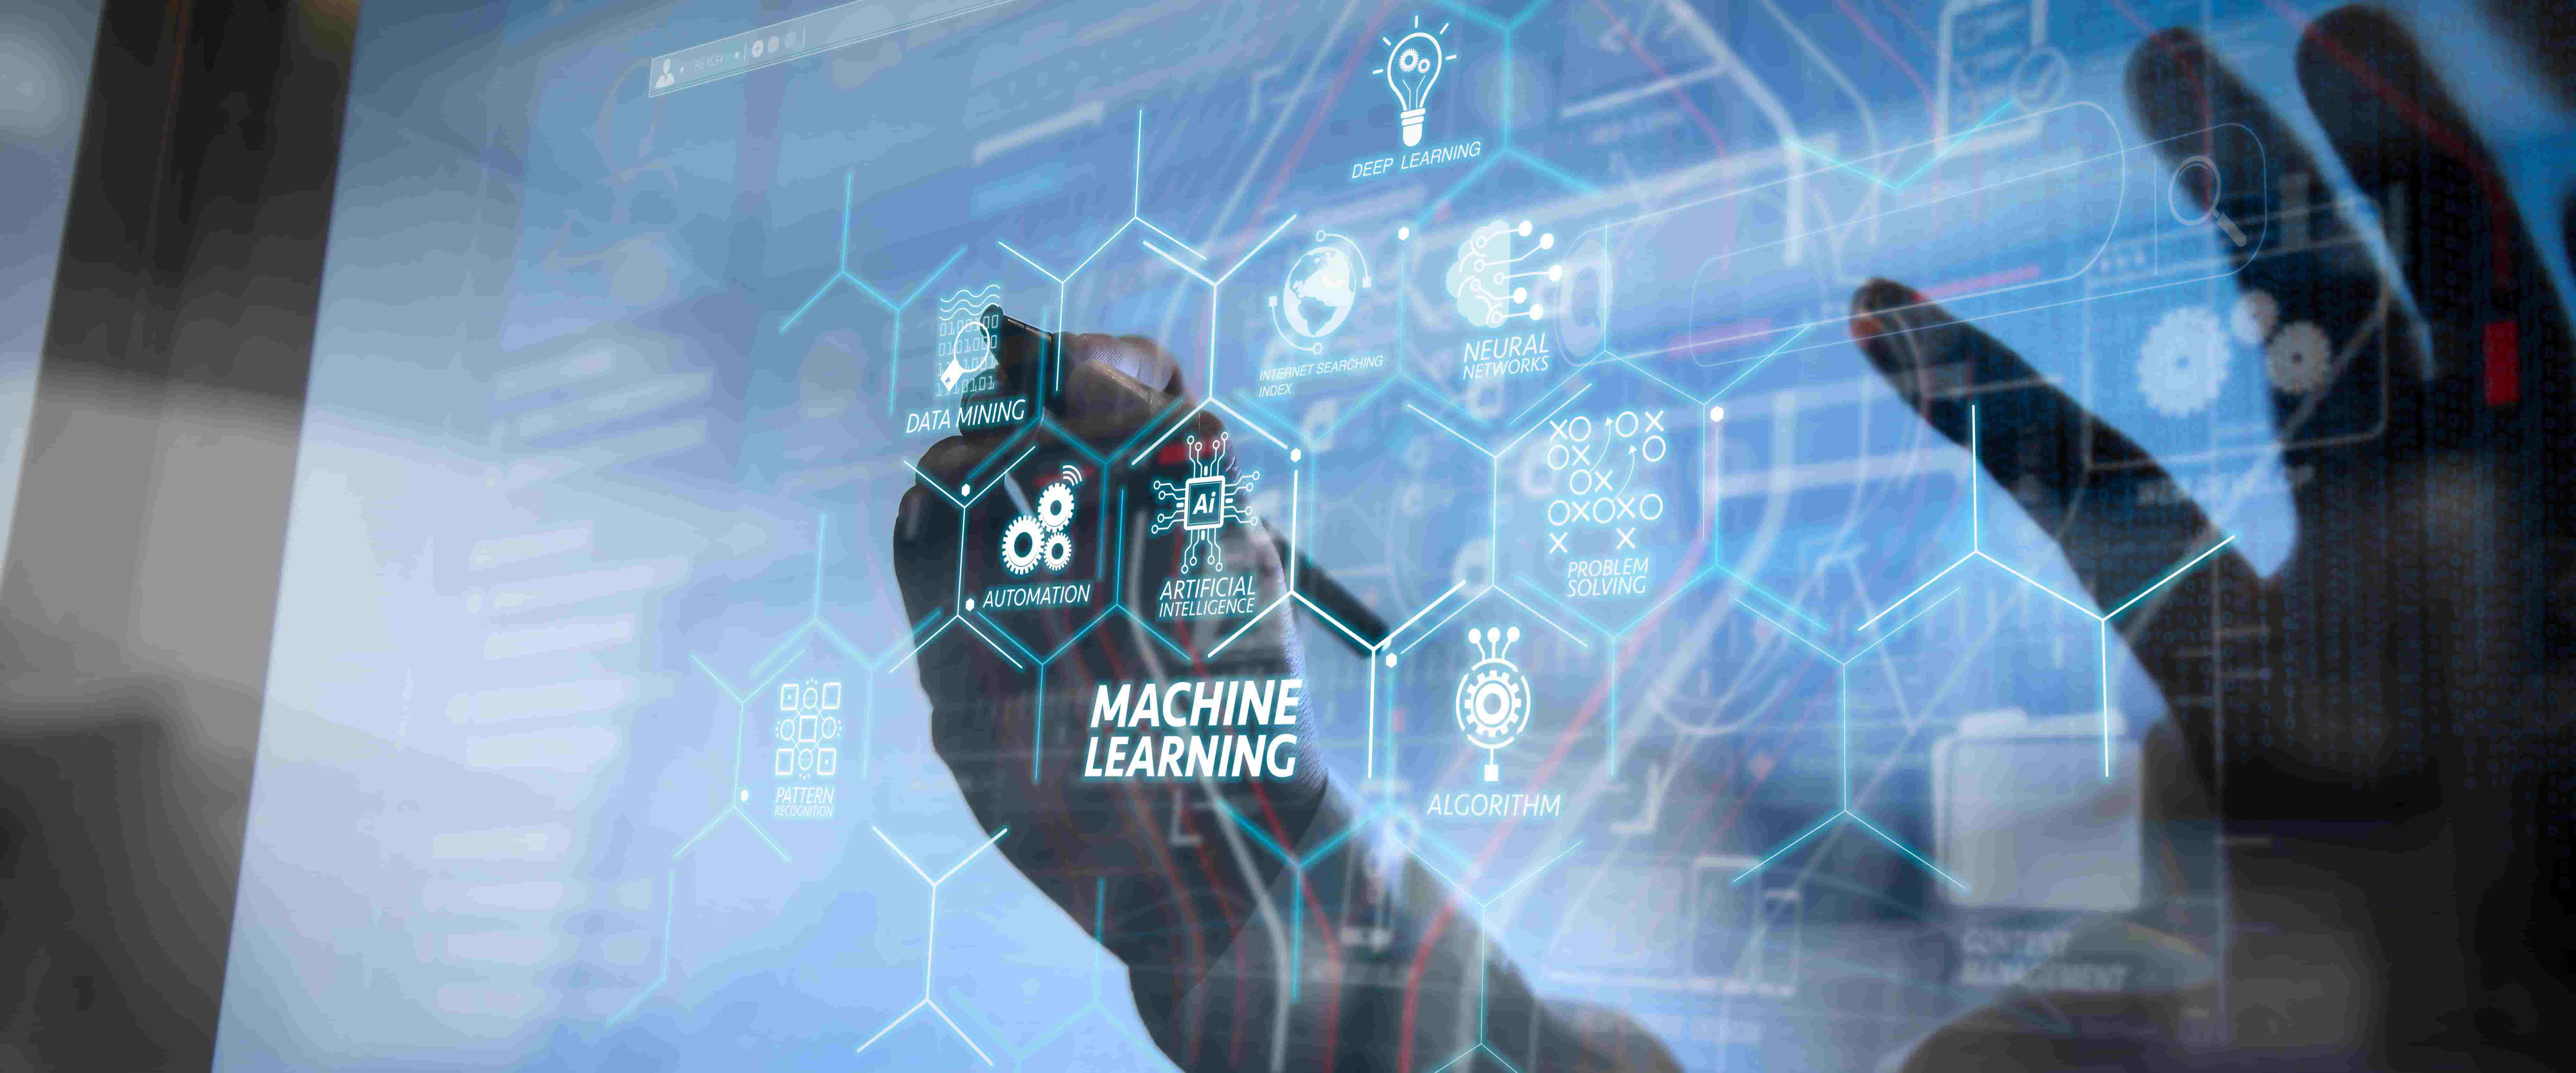 图片展示了一只手在触摸带有各种图标和英文标签的透明屏幕，中心写着“机器学习”，体现了高科技和数据分析的概念。